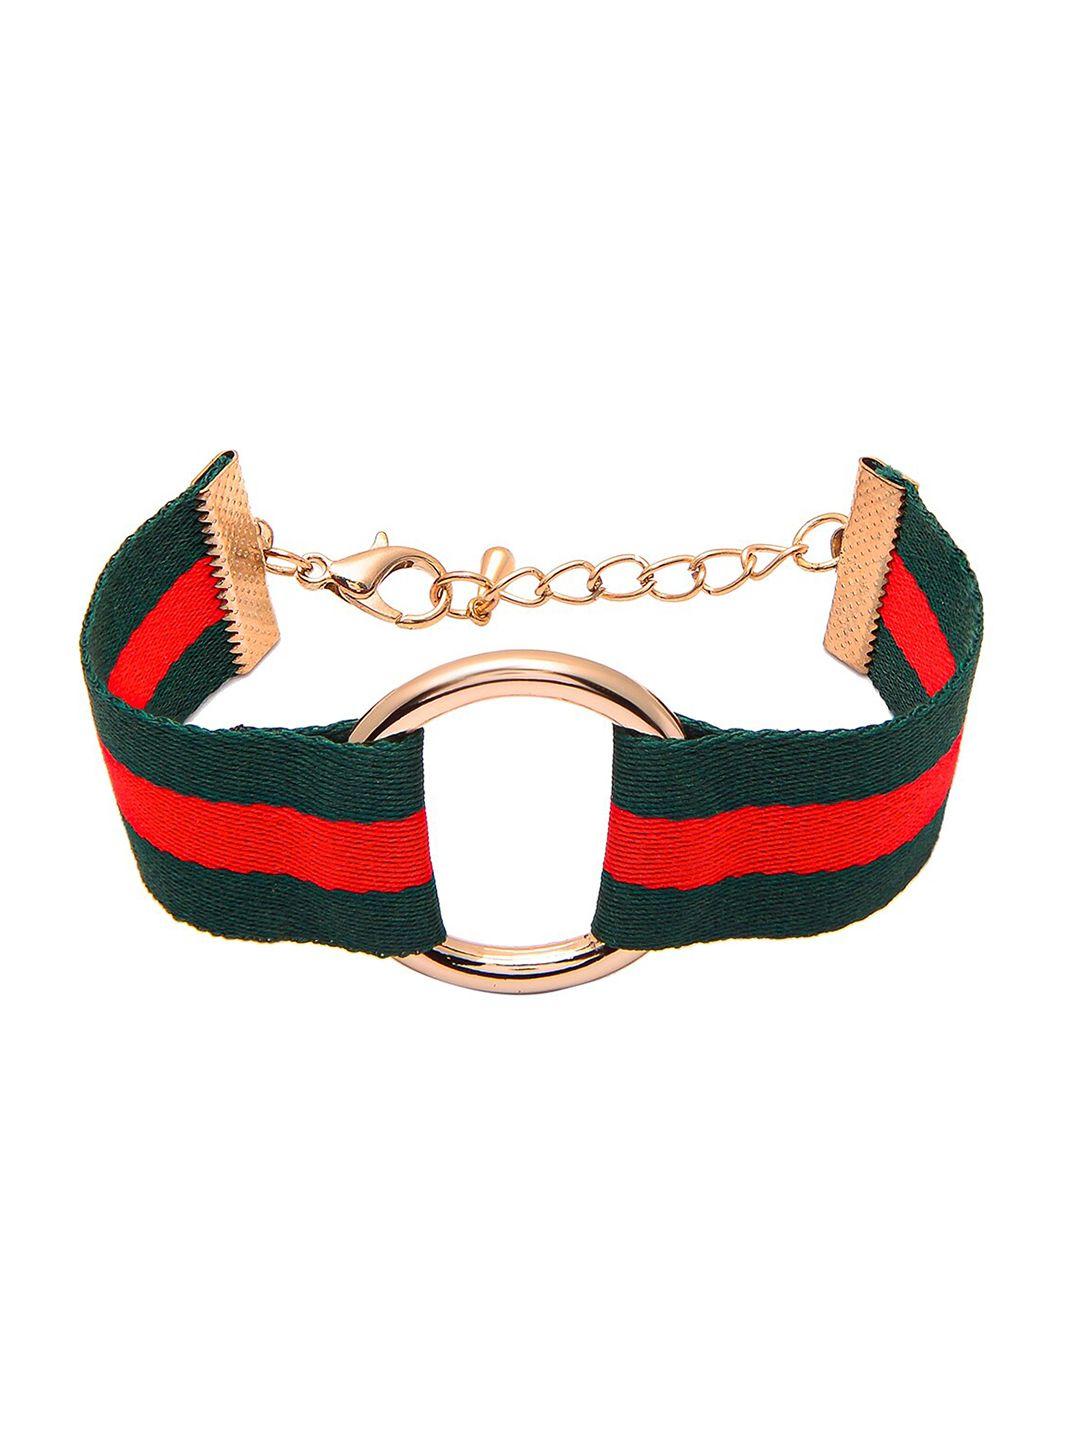 shining jewel - by shivansh women green & red buckle cloth strap link bracelet